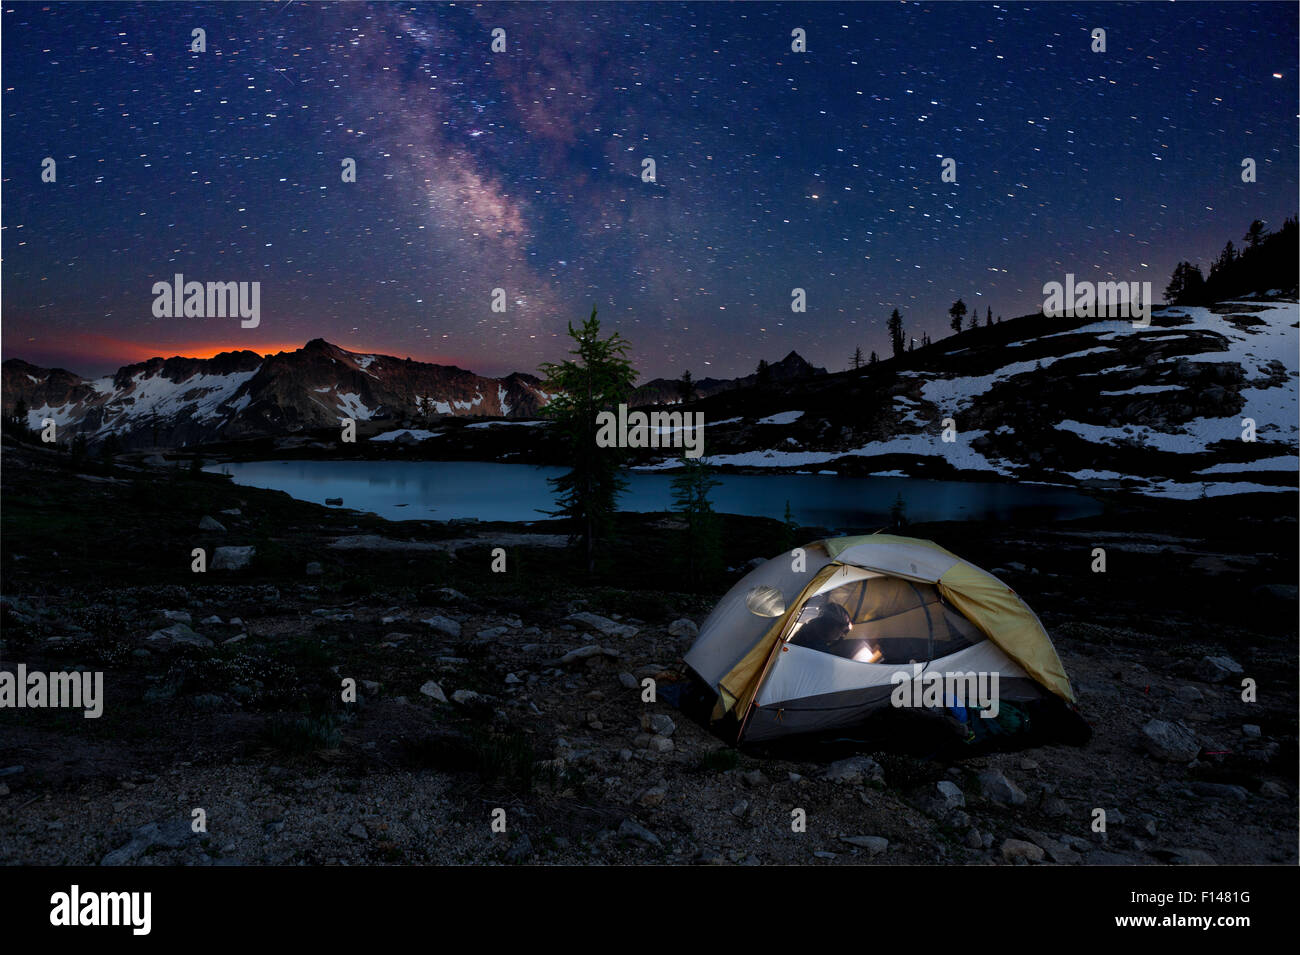 Campingplatz nachts im Schein der Waldbrand am Horizont-Snowy Seen Becken. North-Cascades-Bereich der Okanogan Wenatchee National Forest, Washington, USA, Juli 2014. -Modell veröffentlicht. Stockfoto